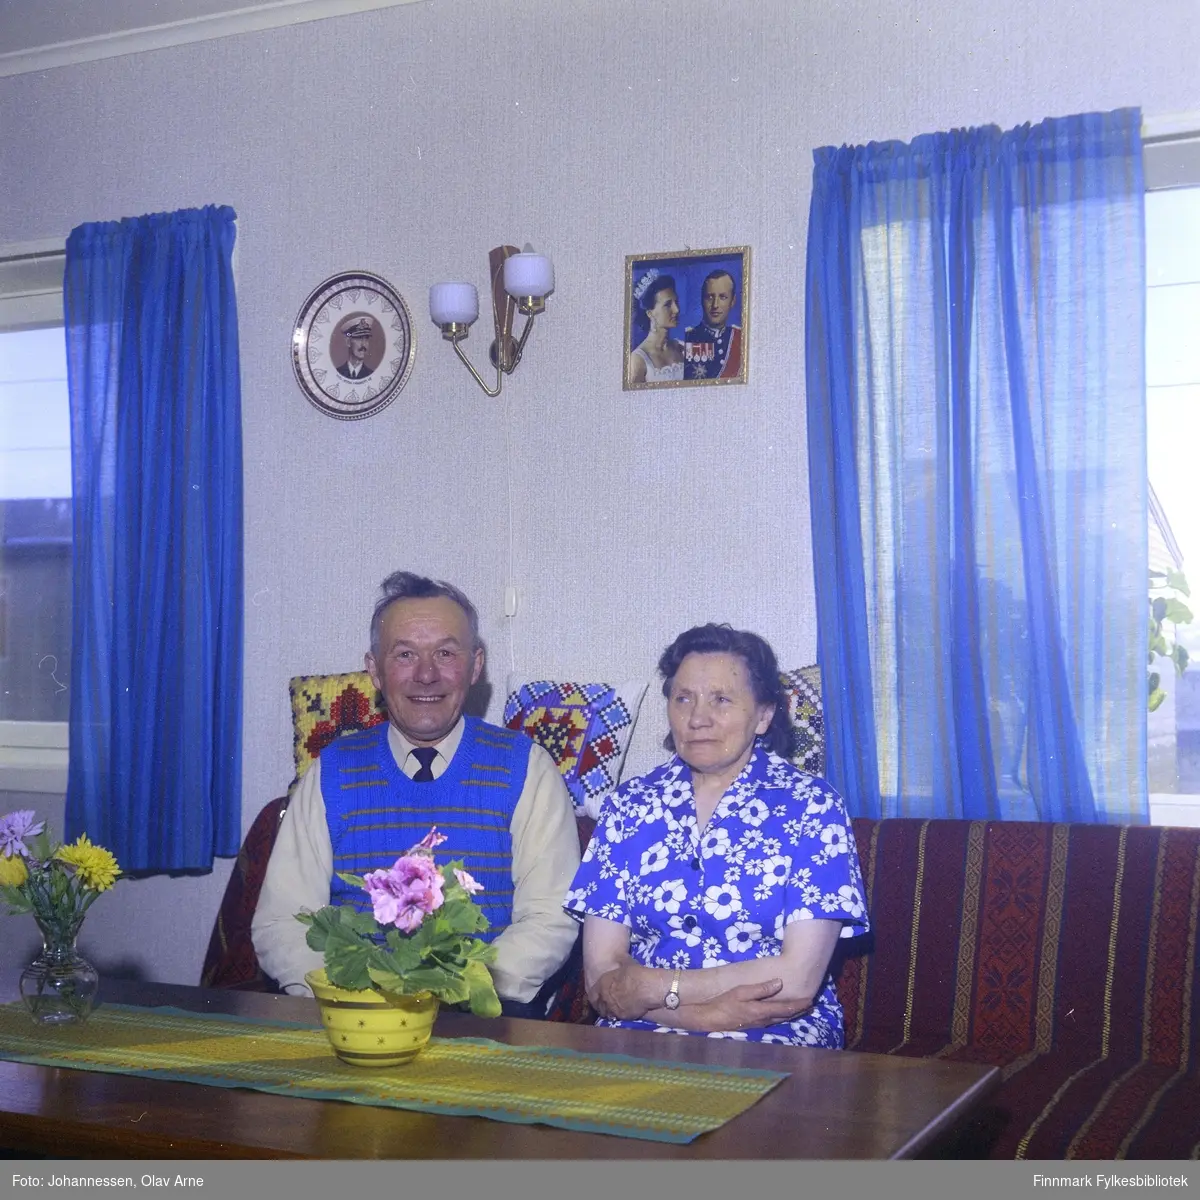 Foto av ukjent mann og kvinne i stue

Kongeparet henger på veggen 

Foto trolig tatt på 1960-tallet